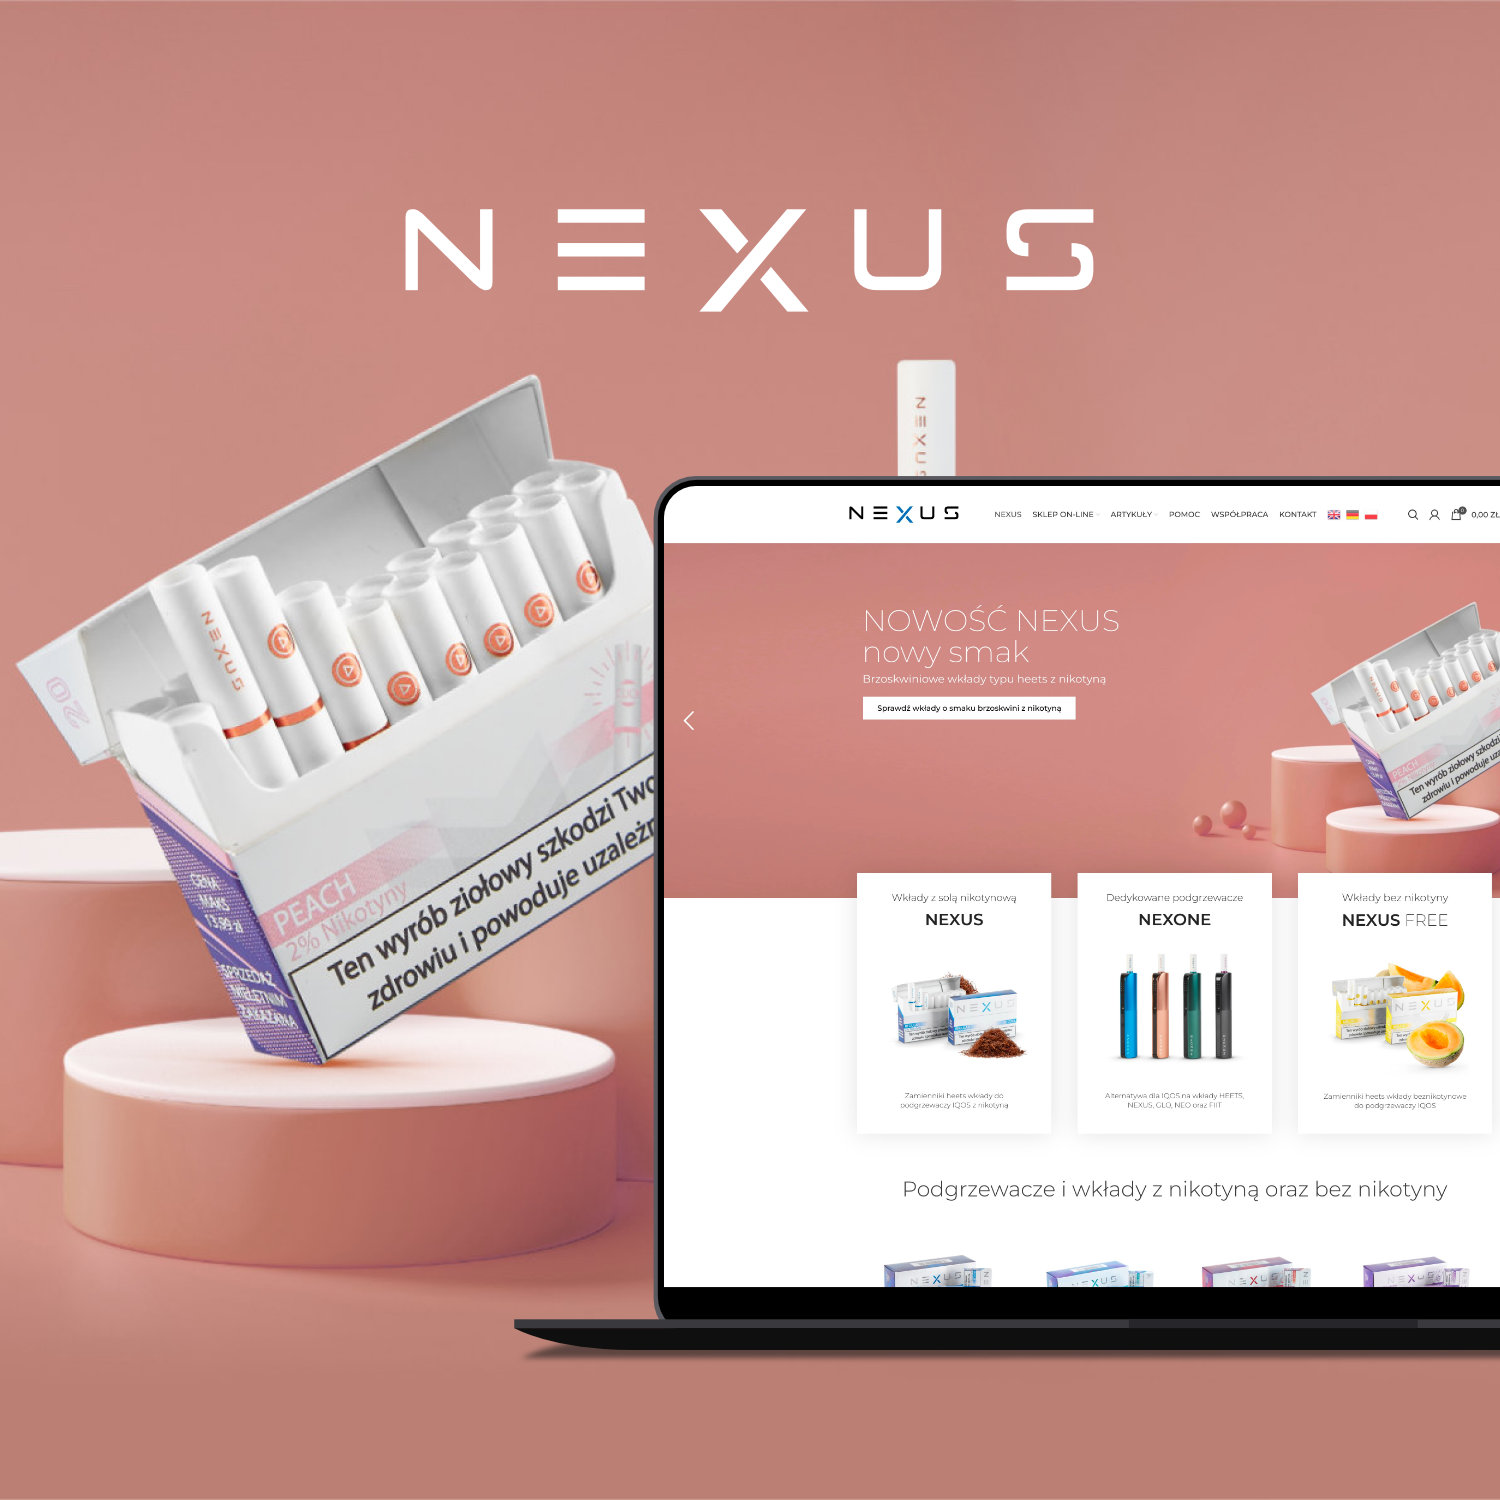 nexus.cool Oficjalny sklep marki NEXUS